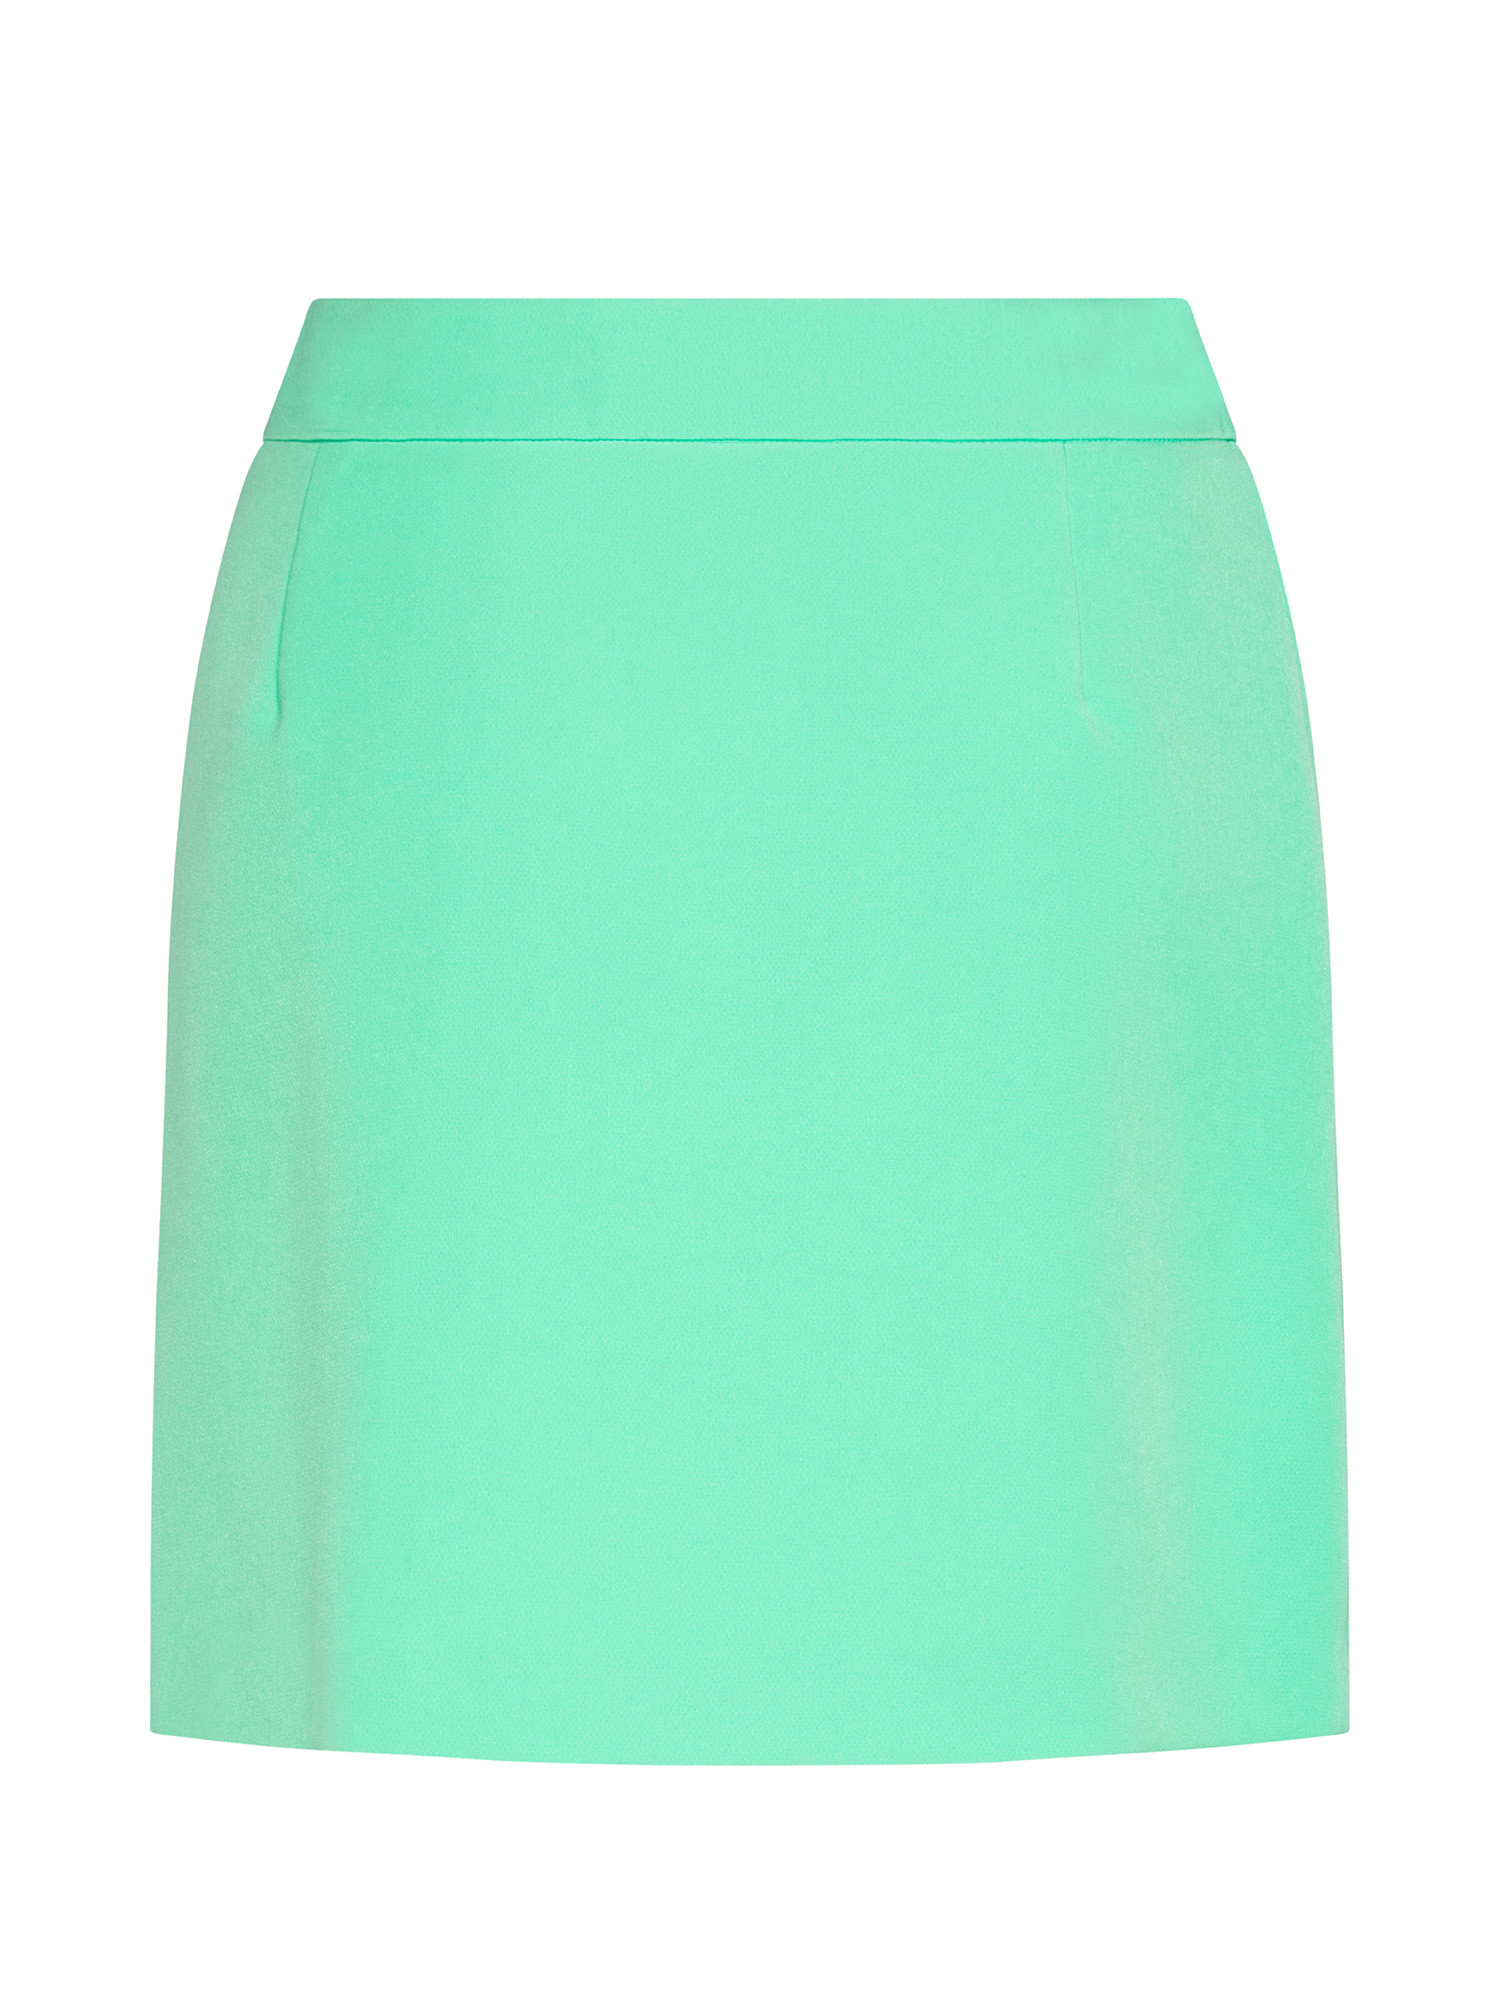 Skirt, Teal, large image number 1